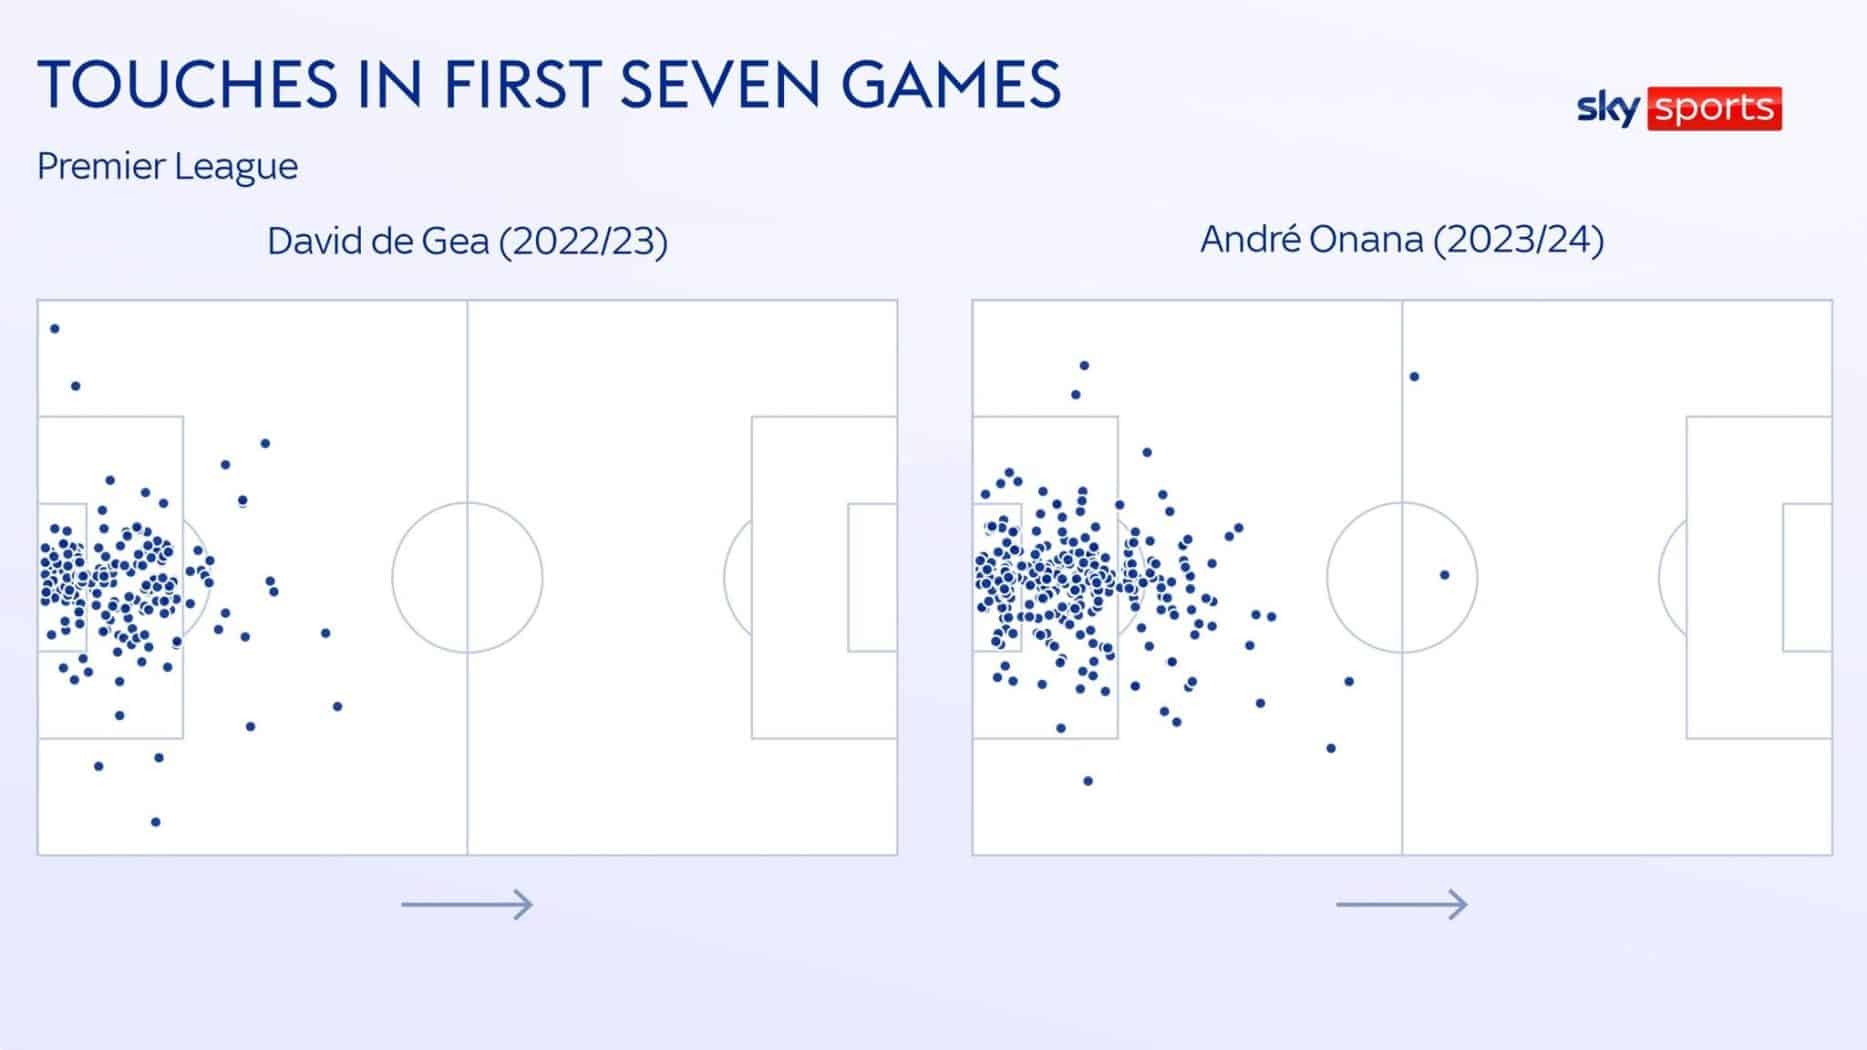 Bản đồ so sánh vị trí chạm bóng của De Gea với Onana qua bảy trận đầu Ngoại hạng Anh mùa trước và mùa này. Ảnh: Sky Sports